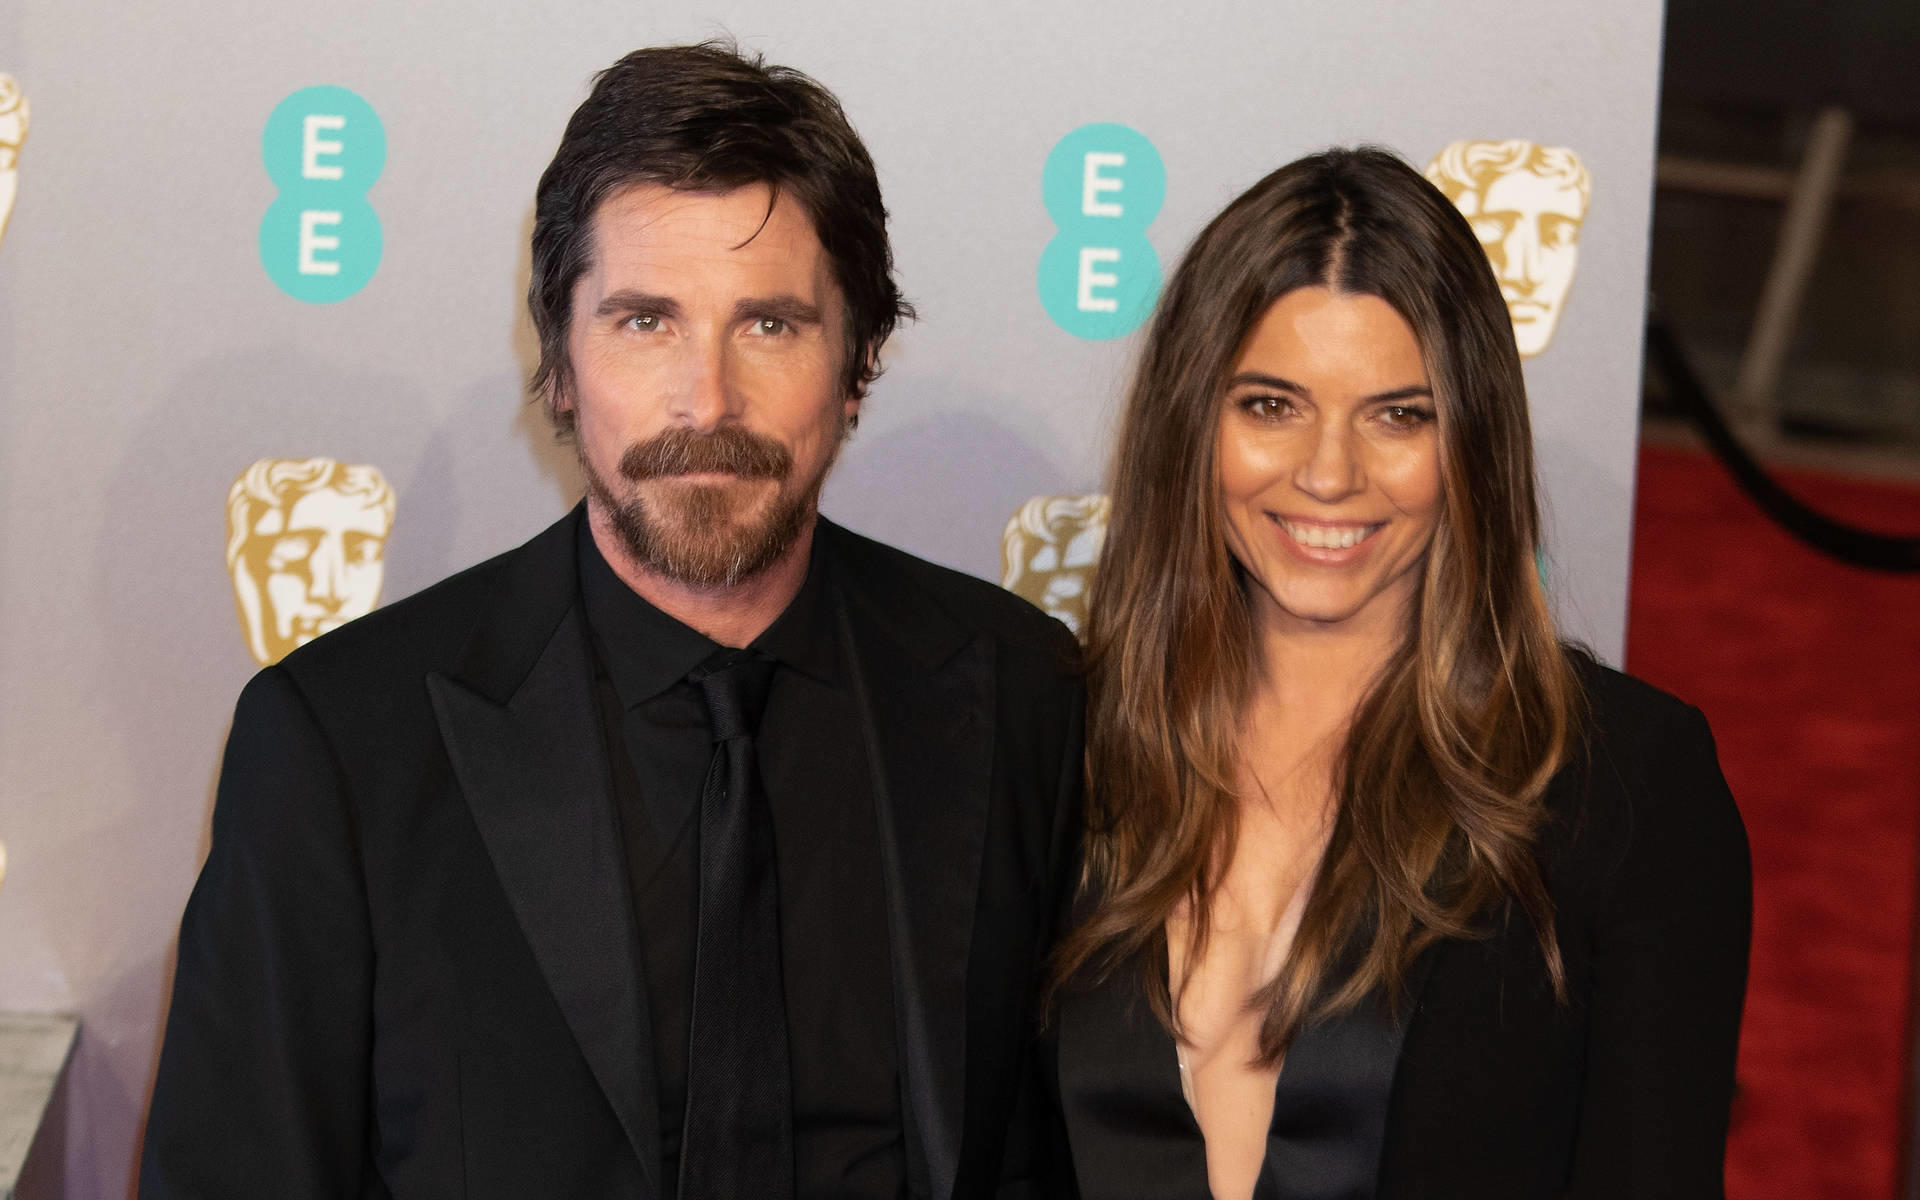 Christian Bale Verwandlung In Donald Trump Kommt Nicht In Frage